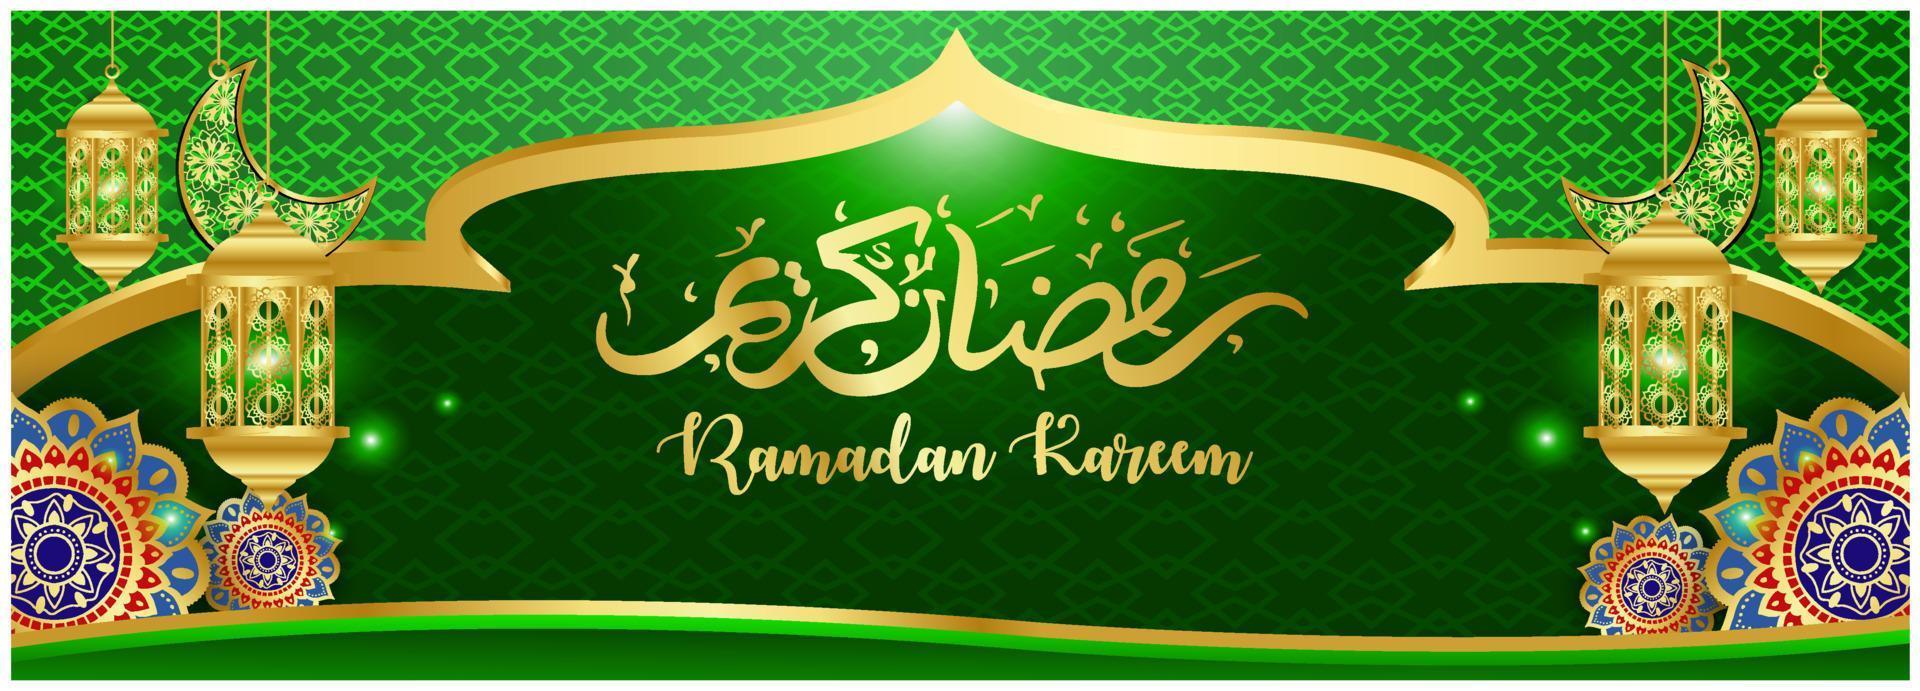 bandeira do conceito de ramadan kareem 3d moldura de ouro janela árabe no fundo bonito bela ilustração em vetor padrão árabe pendurando lua crescente dourada e estrelas cortadas em papel nas nuvens para texto